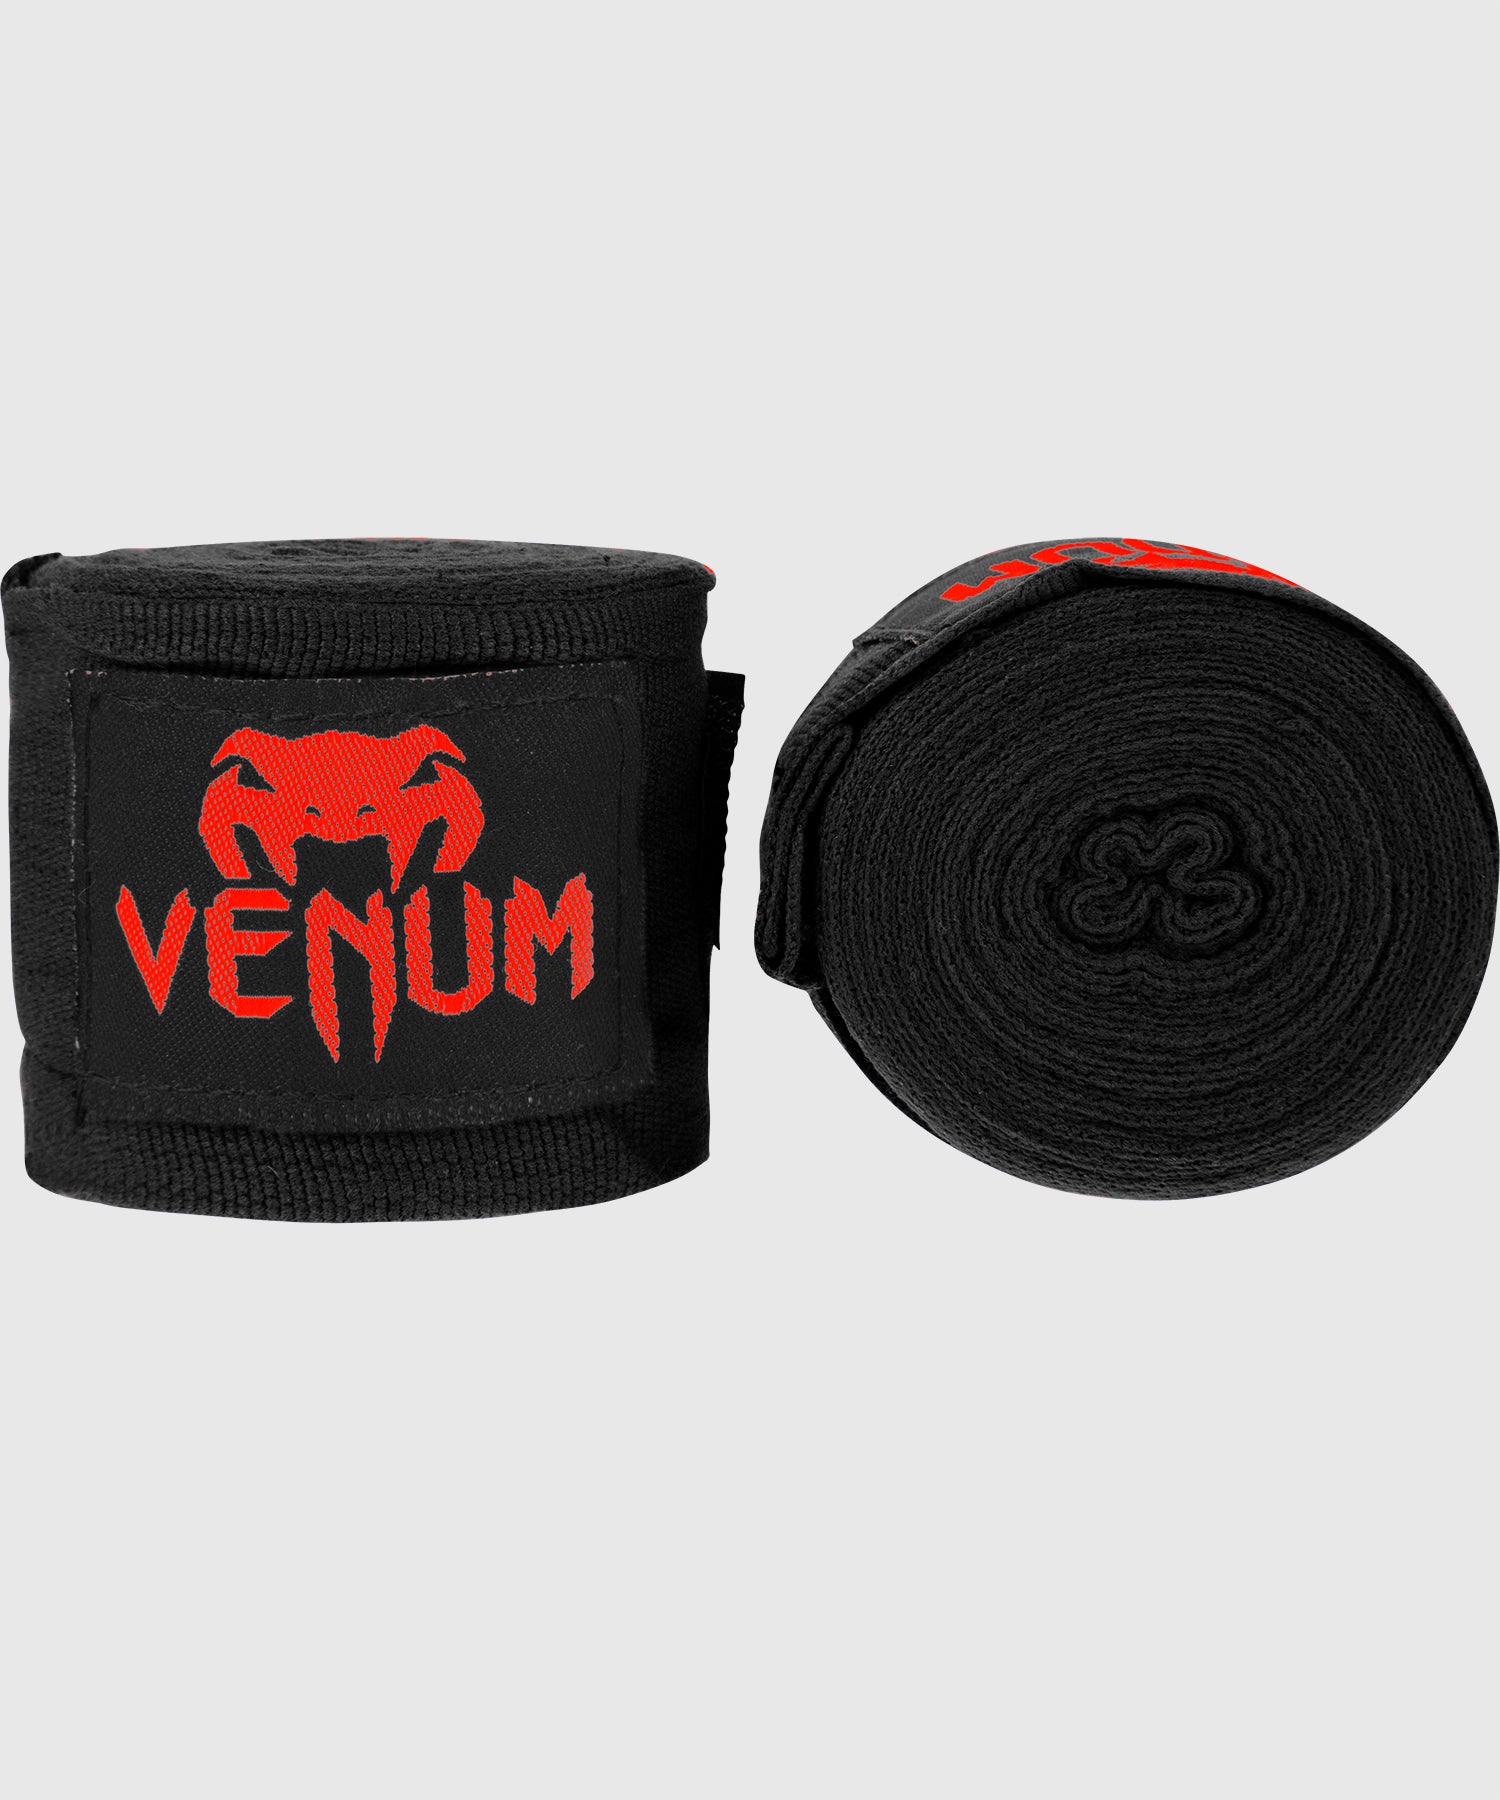 Bandes de boxe Venum Kontact - Noir/Rouge - 2,5 mètres - Bandages de boxe